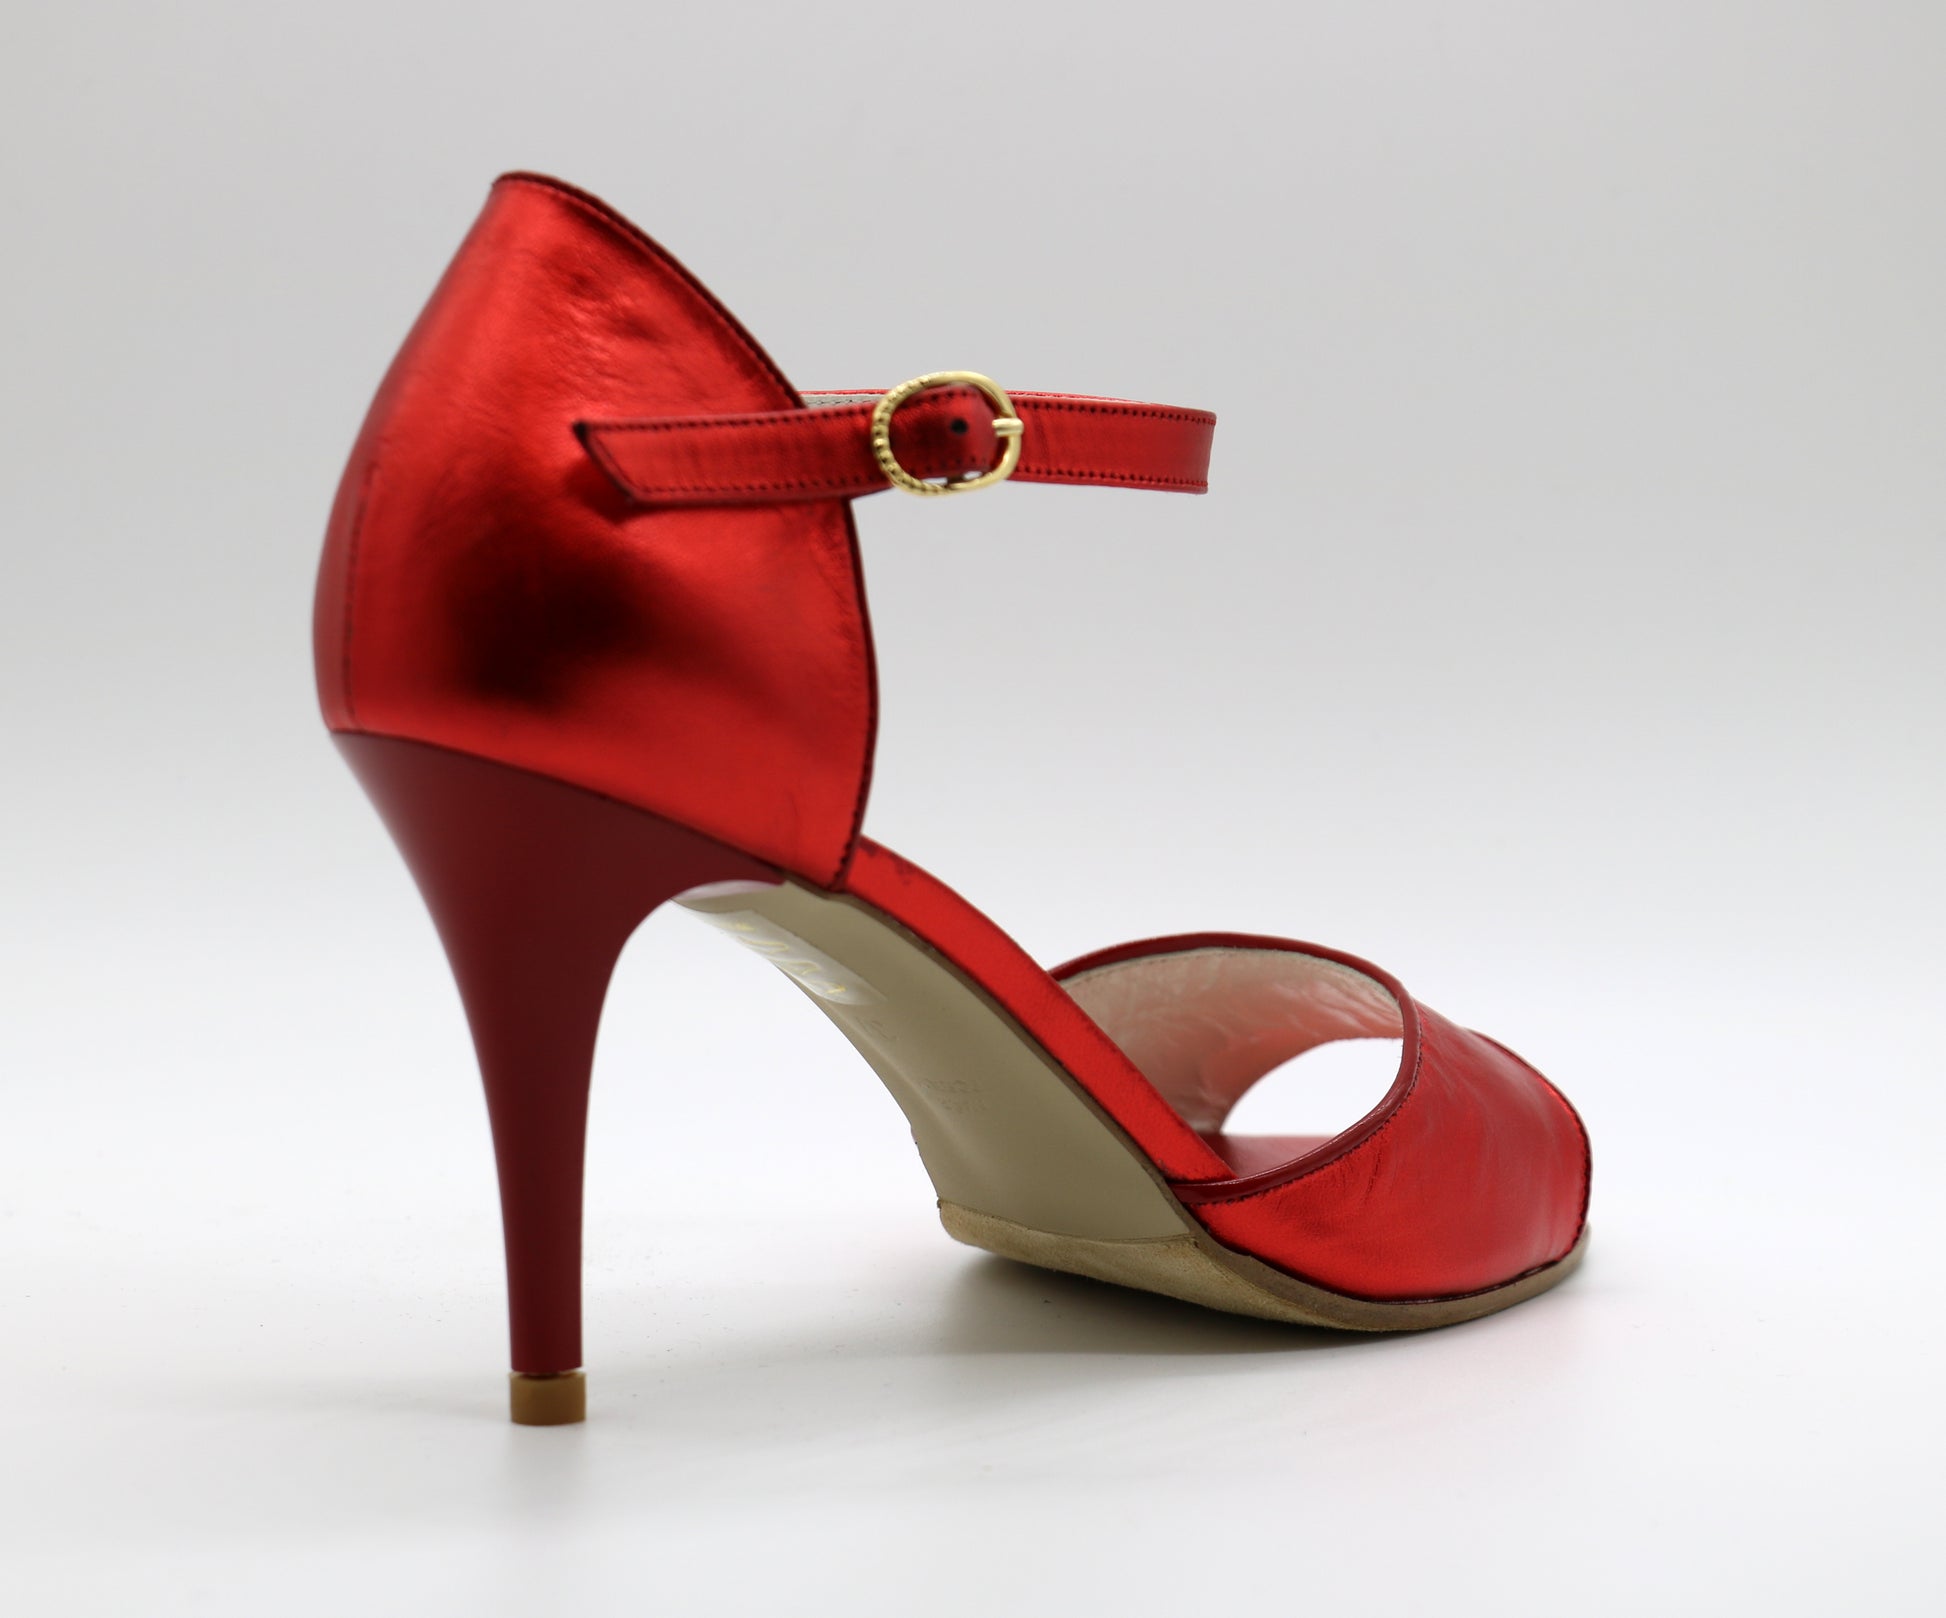 Chaussures de tango argentin Lalatango modèle Flor